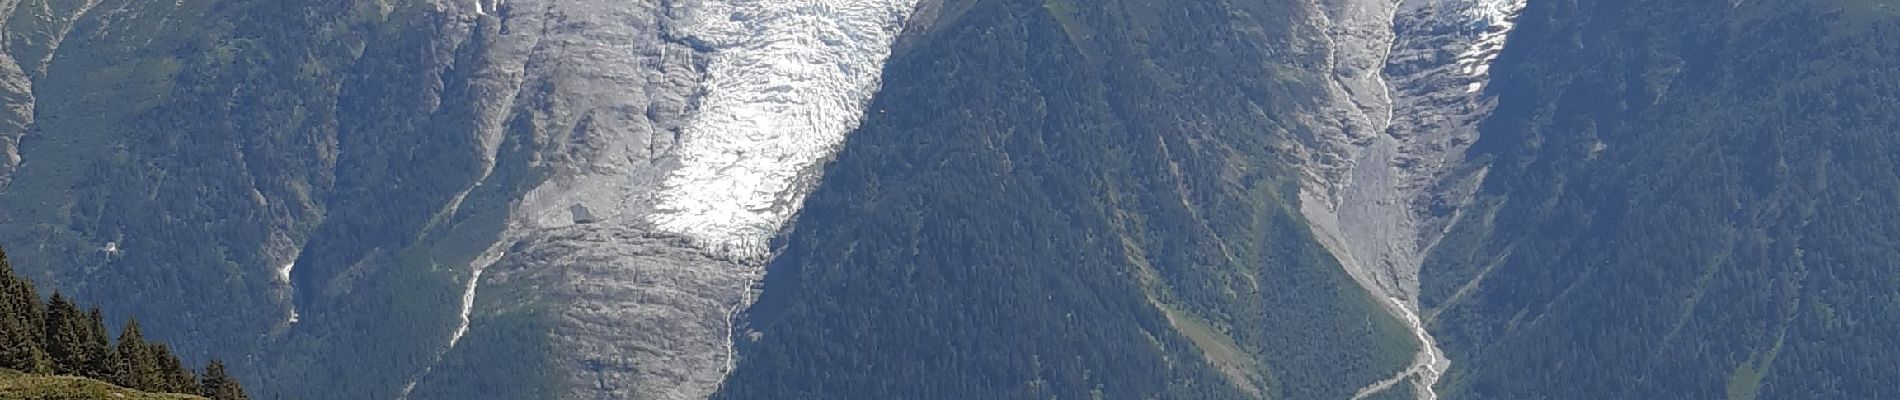 Randonnée Marche Les Houches - Le Merlet,Bellachat,aigulkette des Houches retour par chalets Chailloux - Photo